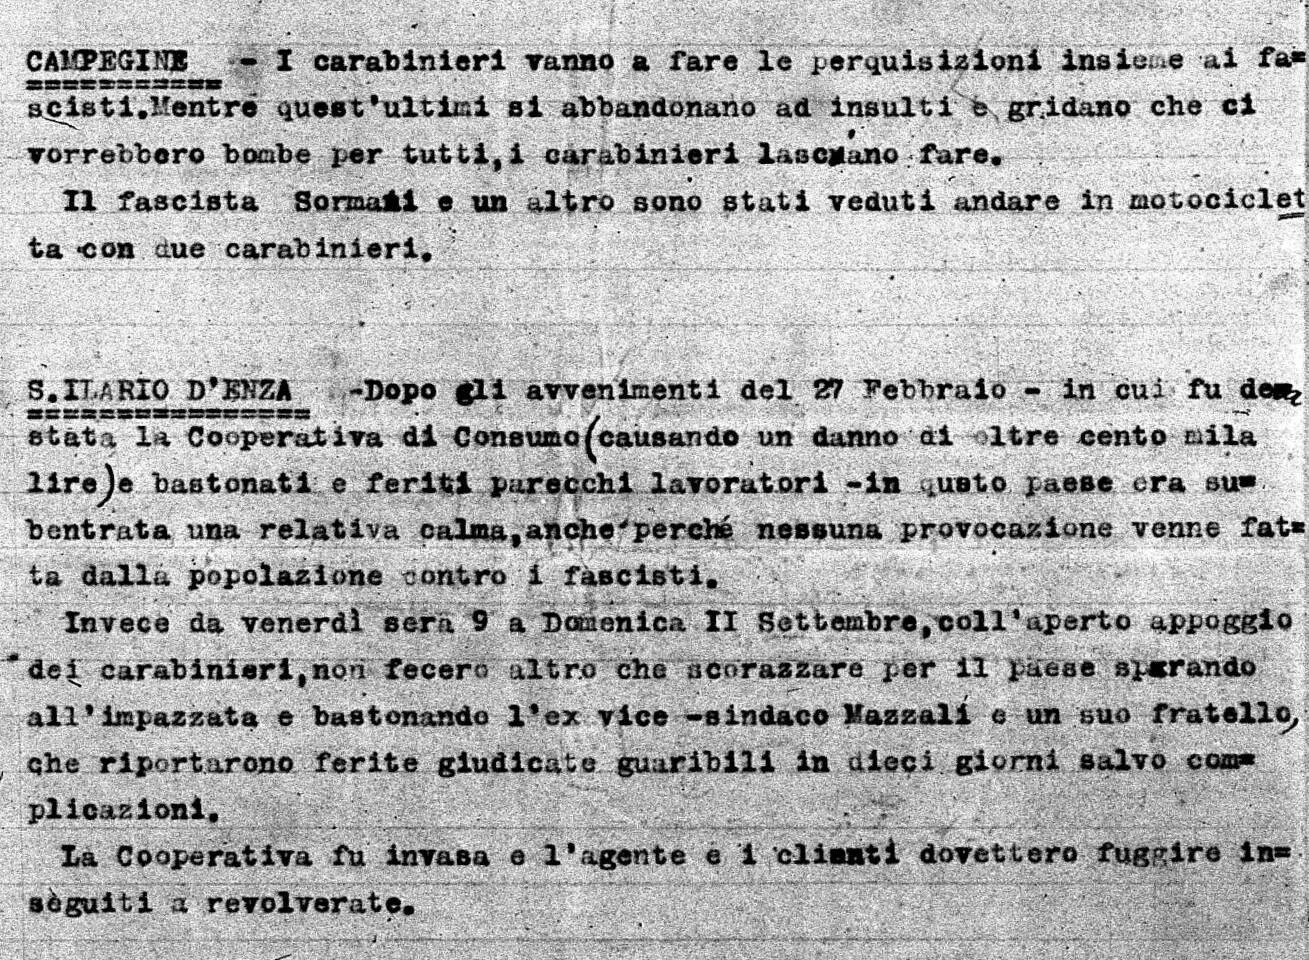 relazione carabinieri provincia reggio emilia 1921